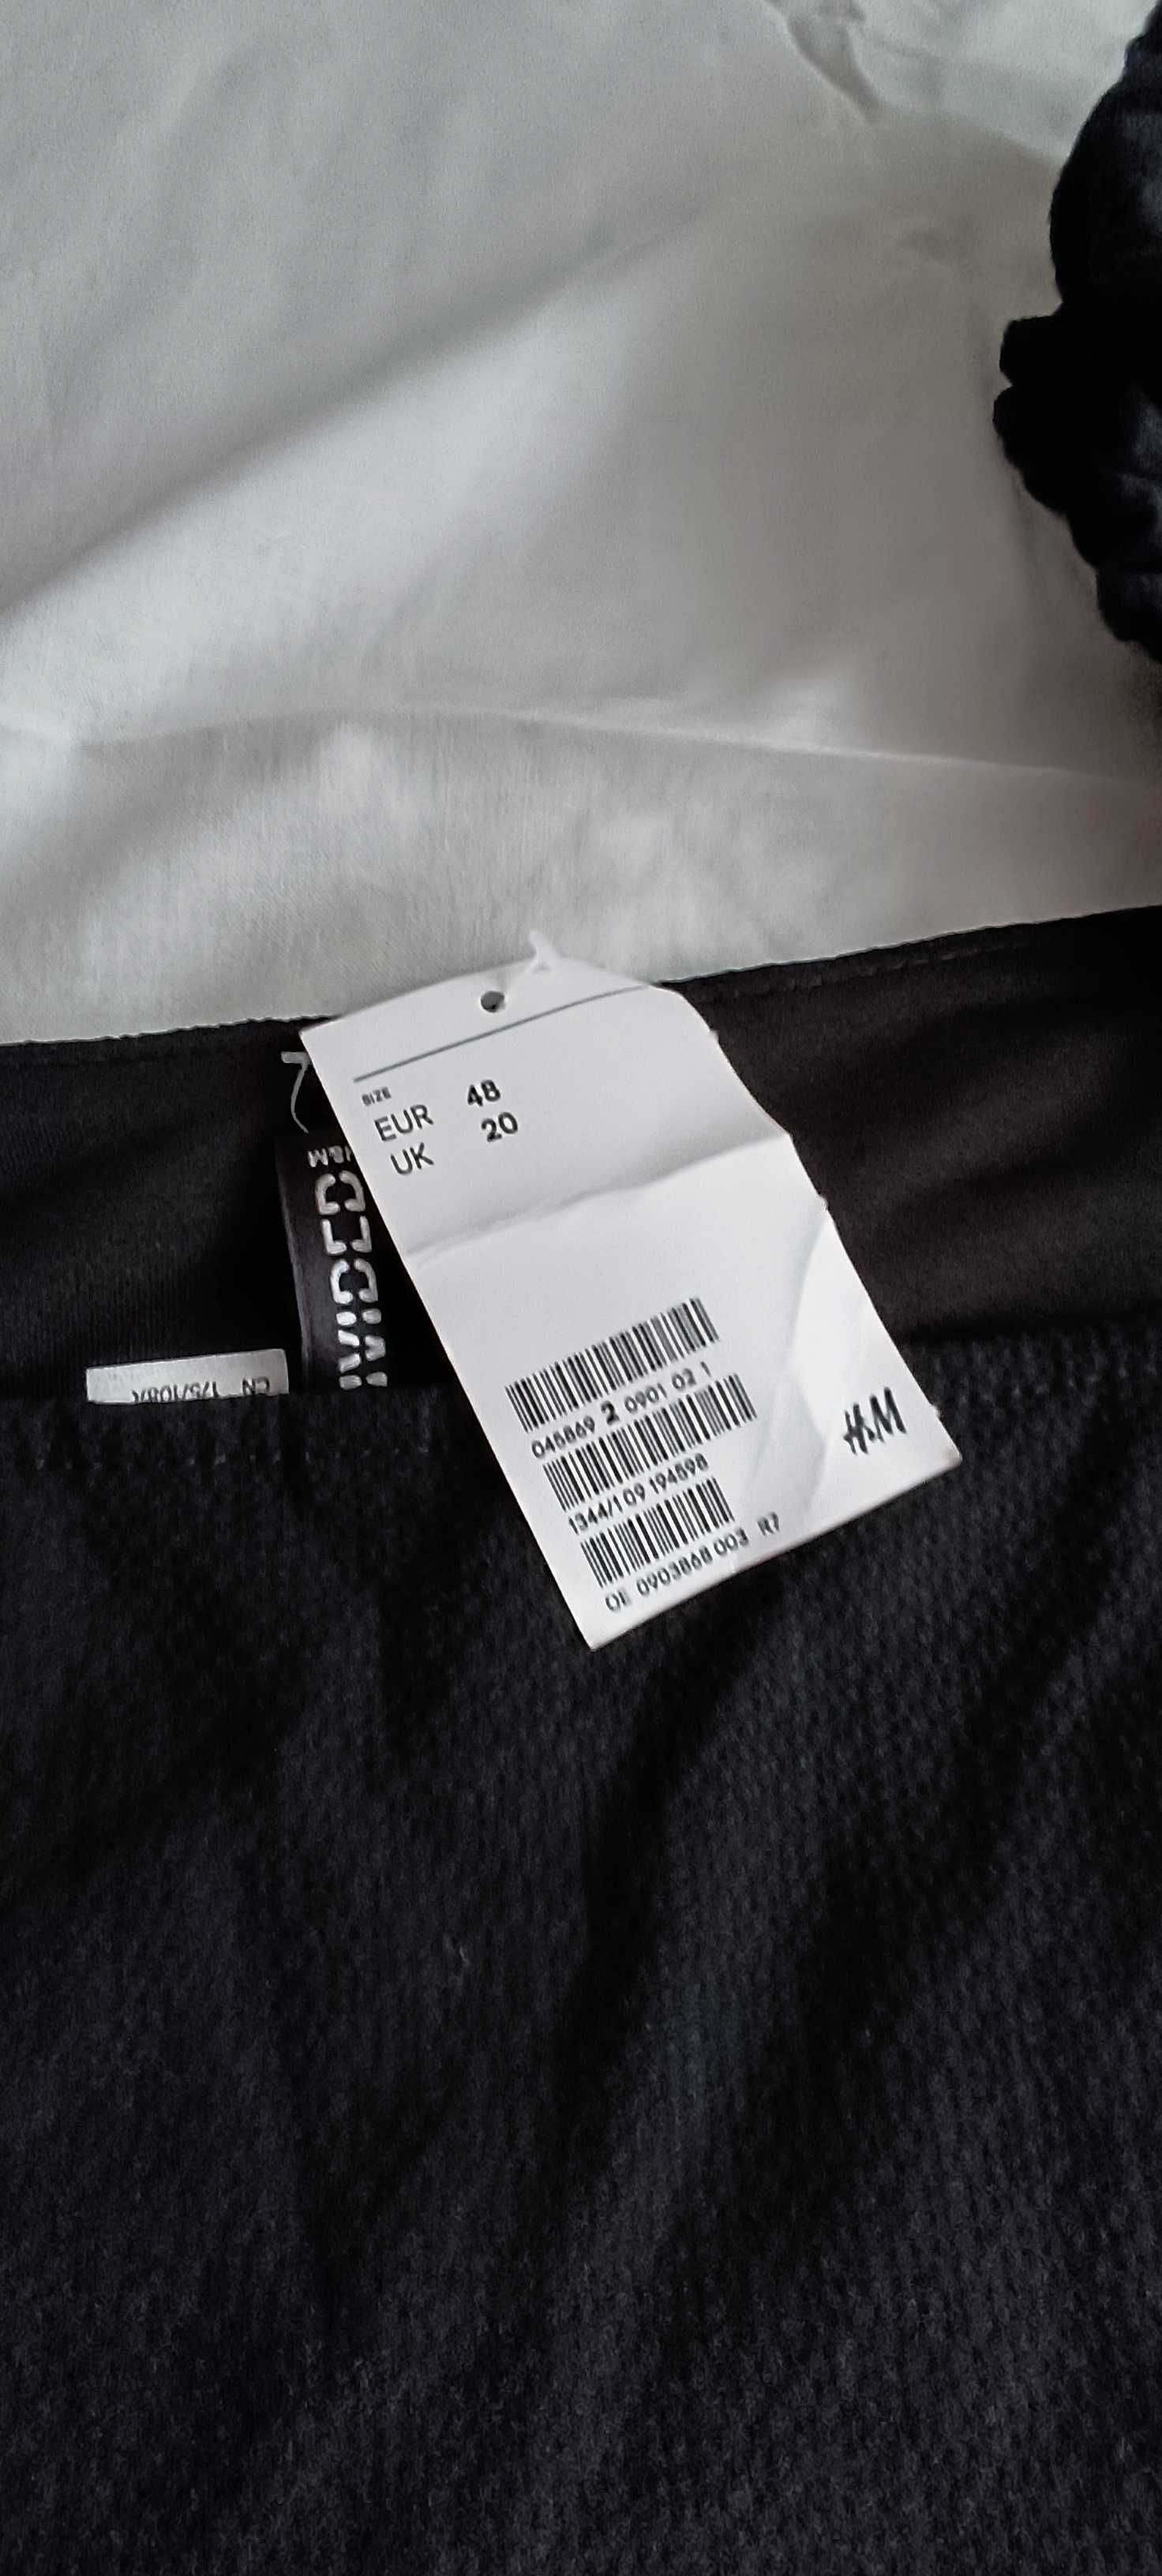 Рокля нова с етикет - марка H&M, размер 48/XL